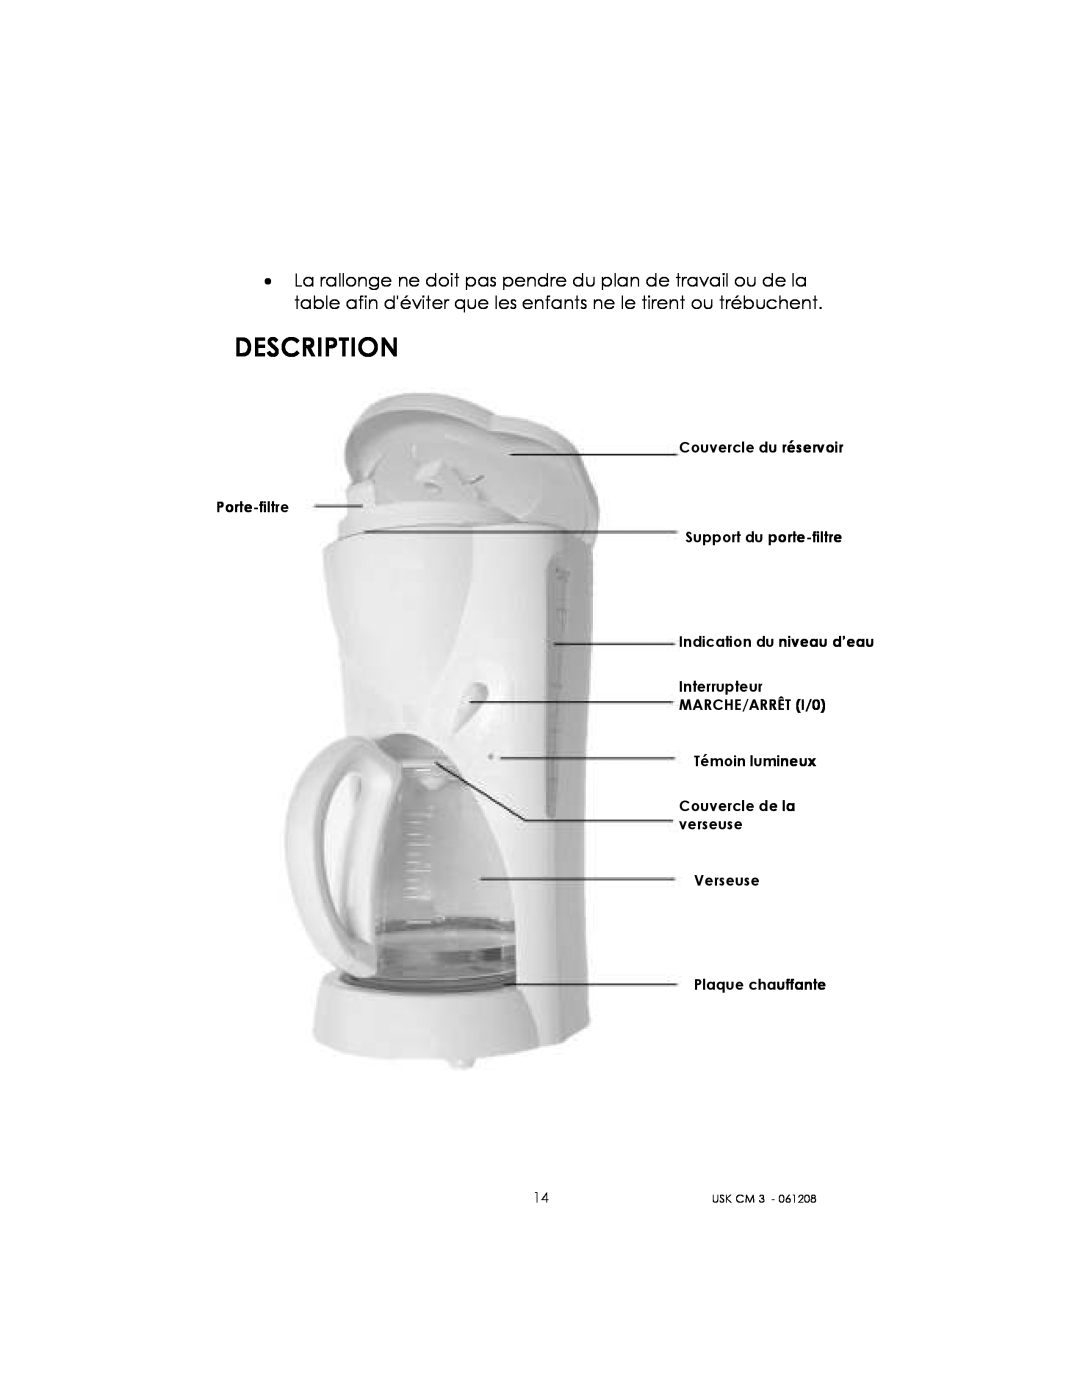 Kalorik USK CM 3 Description, Couvercle du réservoir Porte-filtre, Support du porte-filtre, Plaque chauffante, Usk Cm 